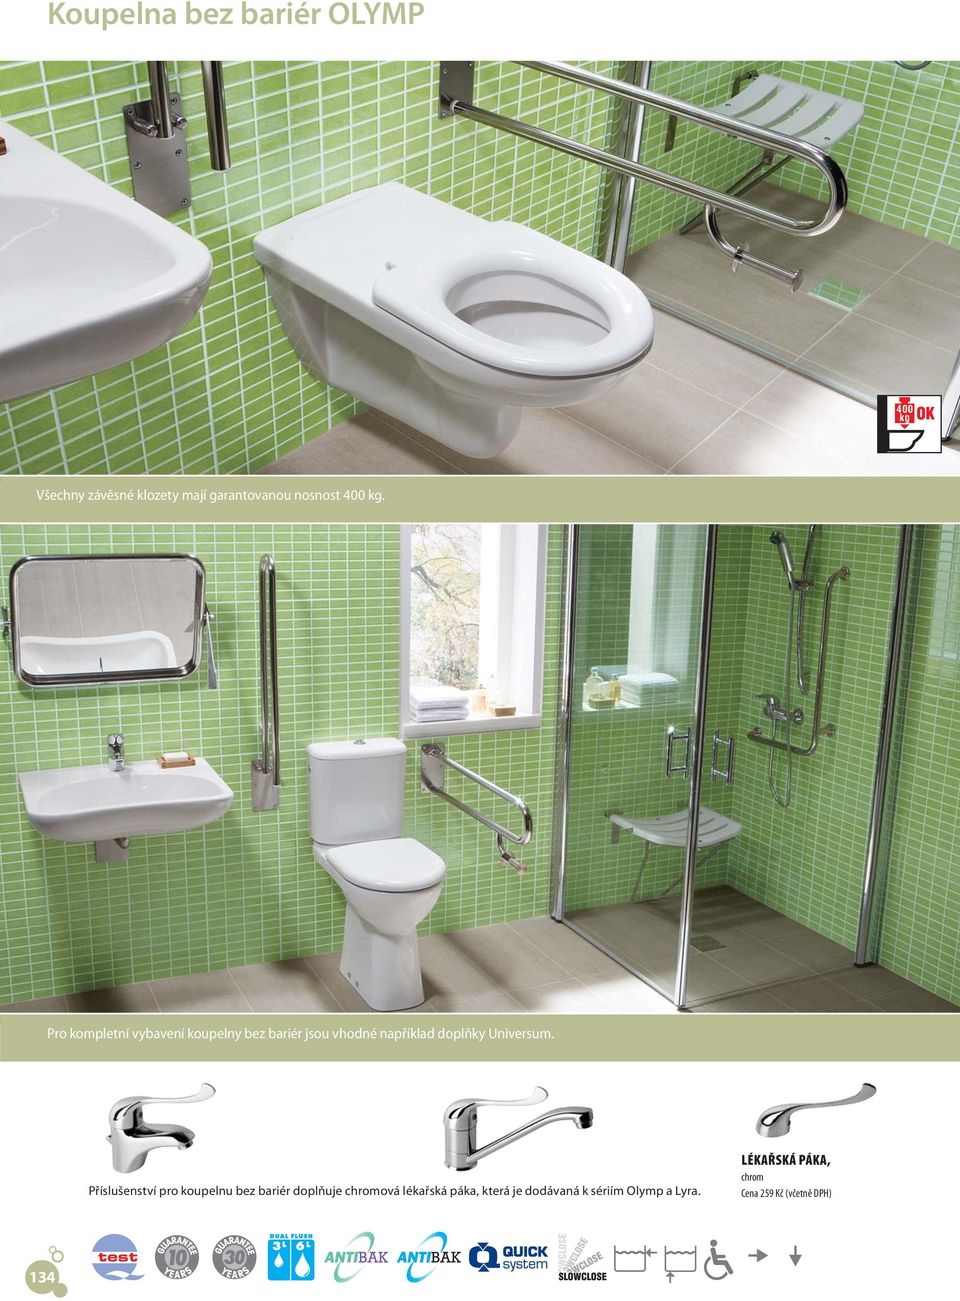 Pro kompletní vybavení koupelny bez bariér jsou vhodné například doplňky Universum.